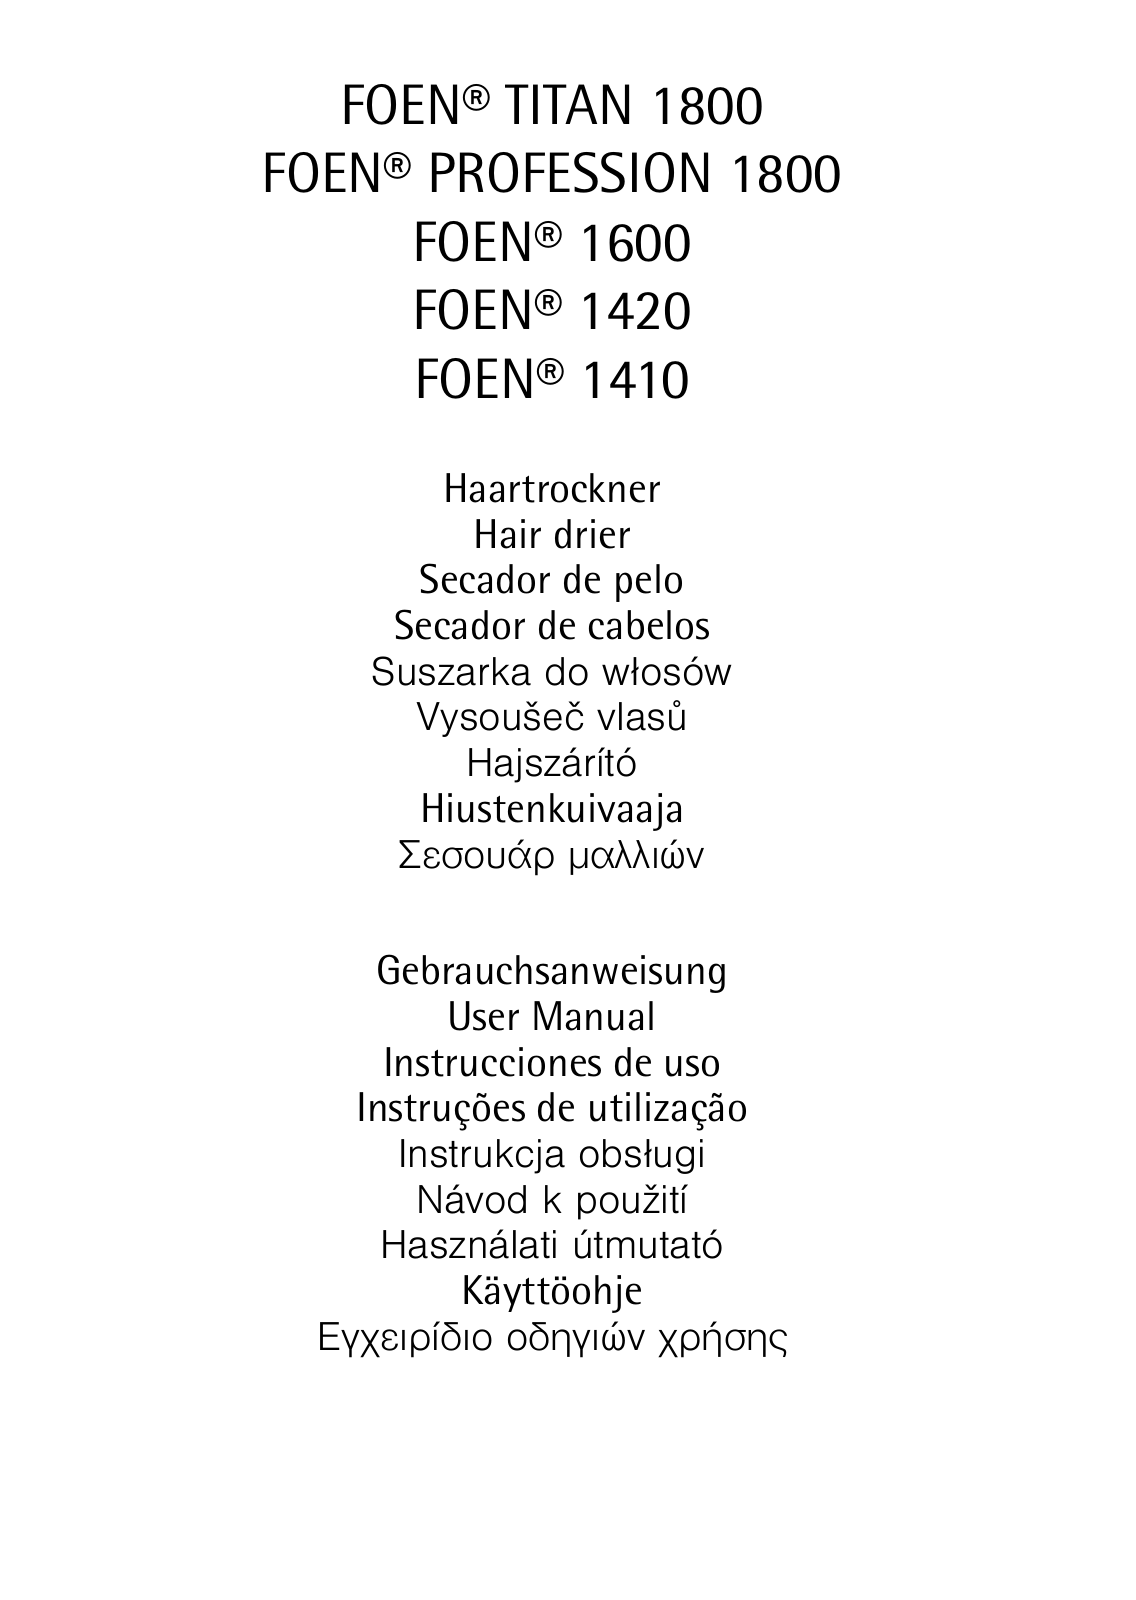 AEG FOEN1410, FOEN1600, FOEN1420 User Manual